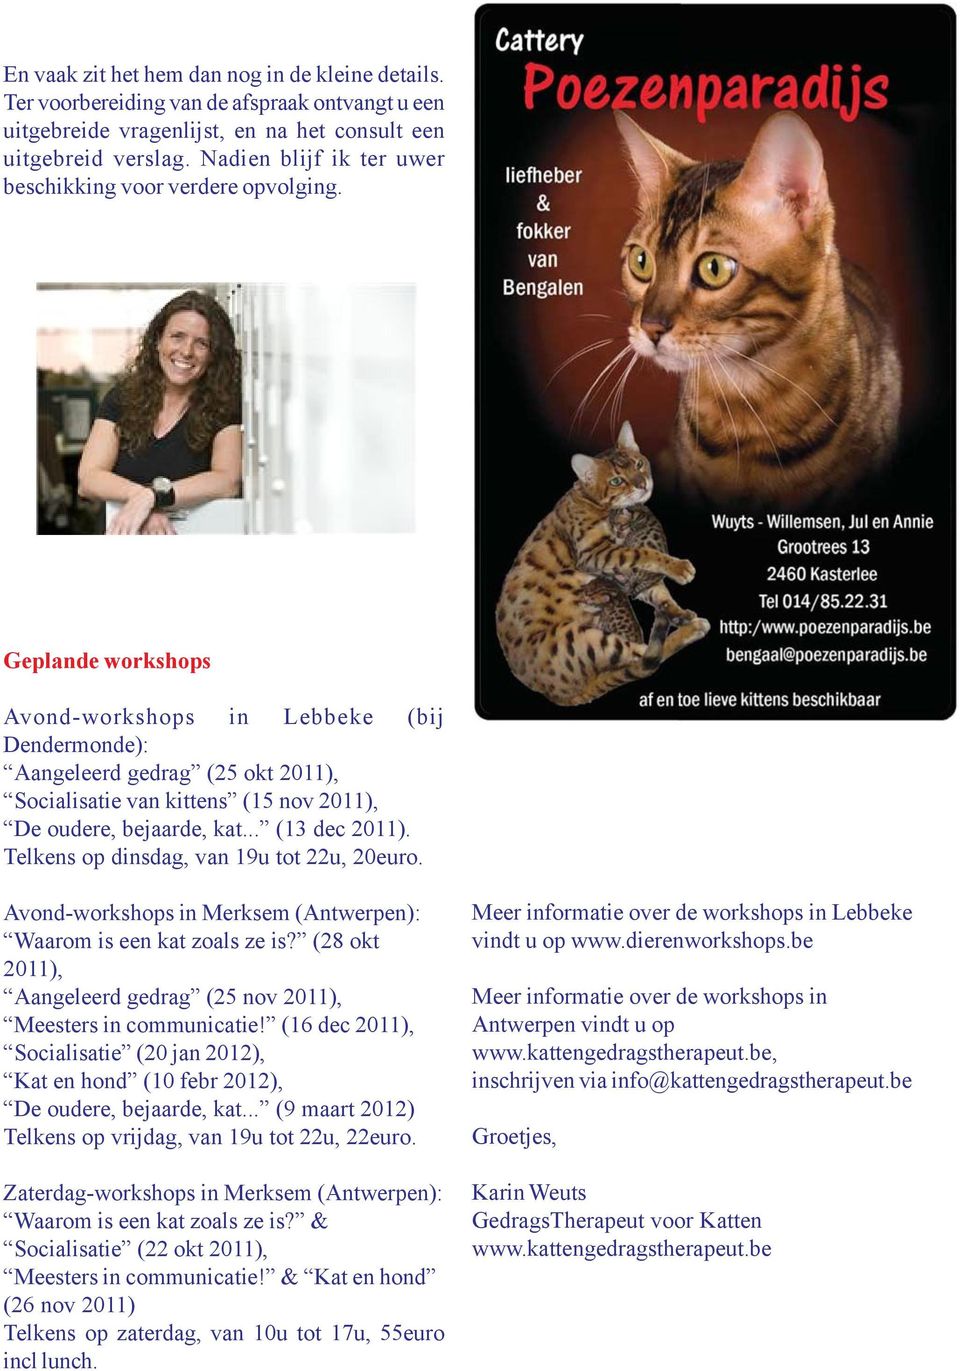 Geplande workshops Avond-workshops in Lebbeke (bij Dendermonde): Aangeleerd gedrag (25 okt 2011), Socialisatie van kittens (15 nov 2011), De oudere, bejaarde, kat... (13 dec 2011).